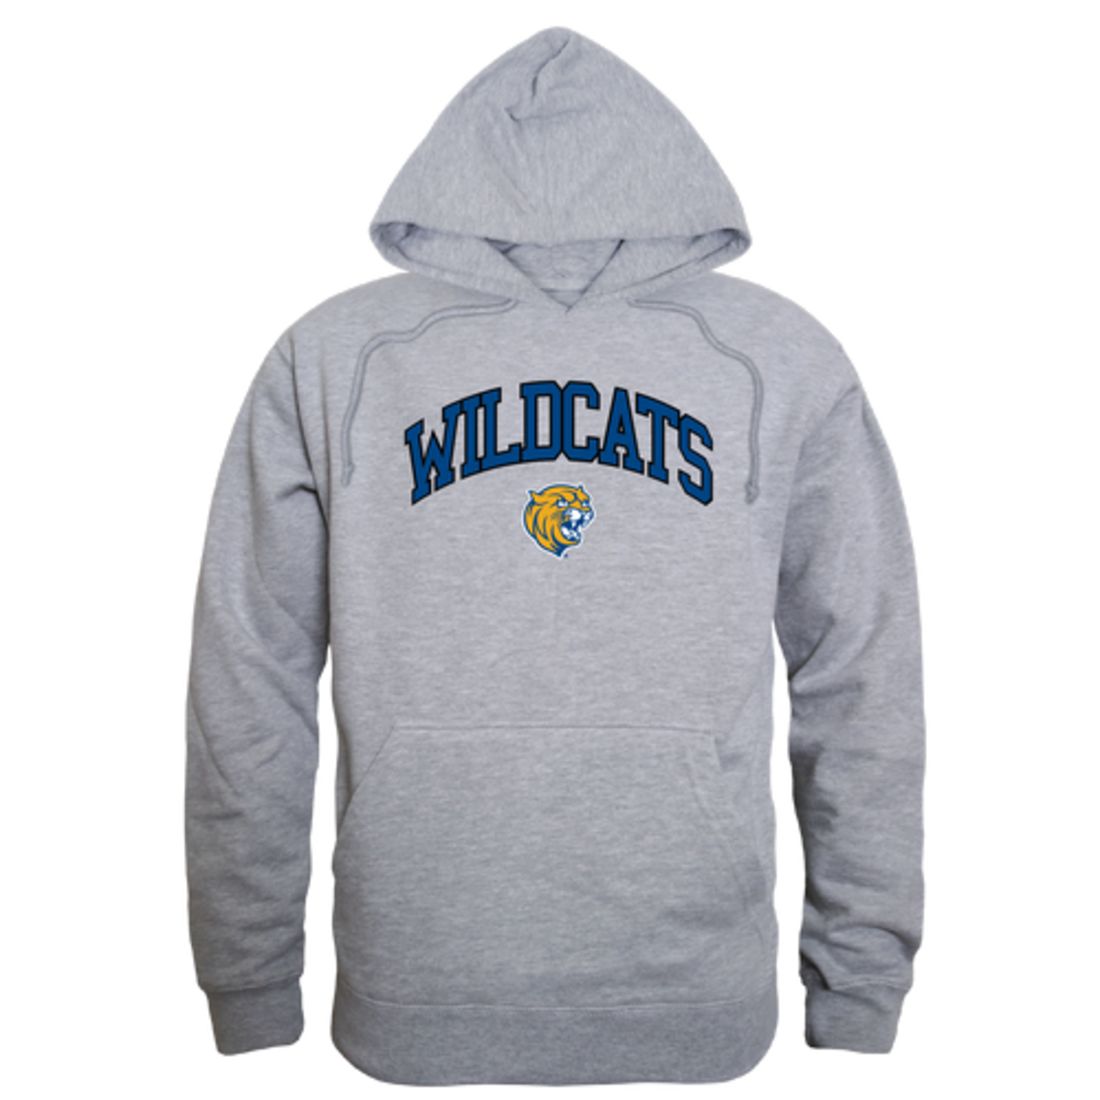 Johnson-&-Wales-University-Wildcats-Campus-Fleece-Hoodie-Sweatshirts